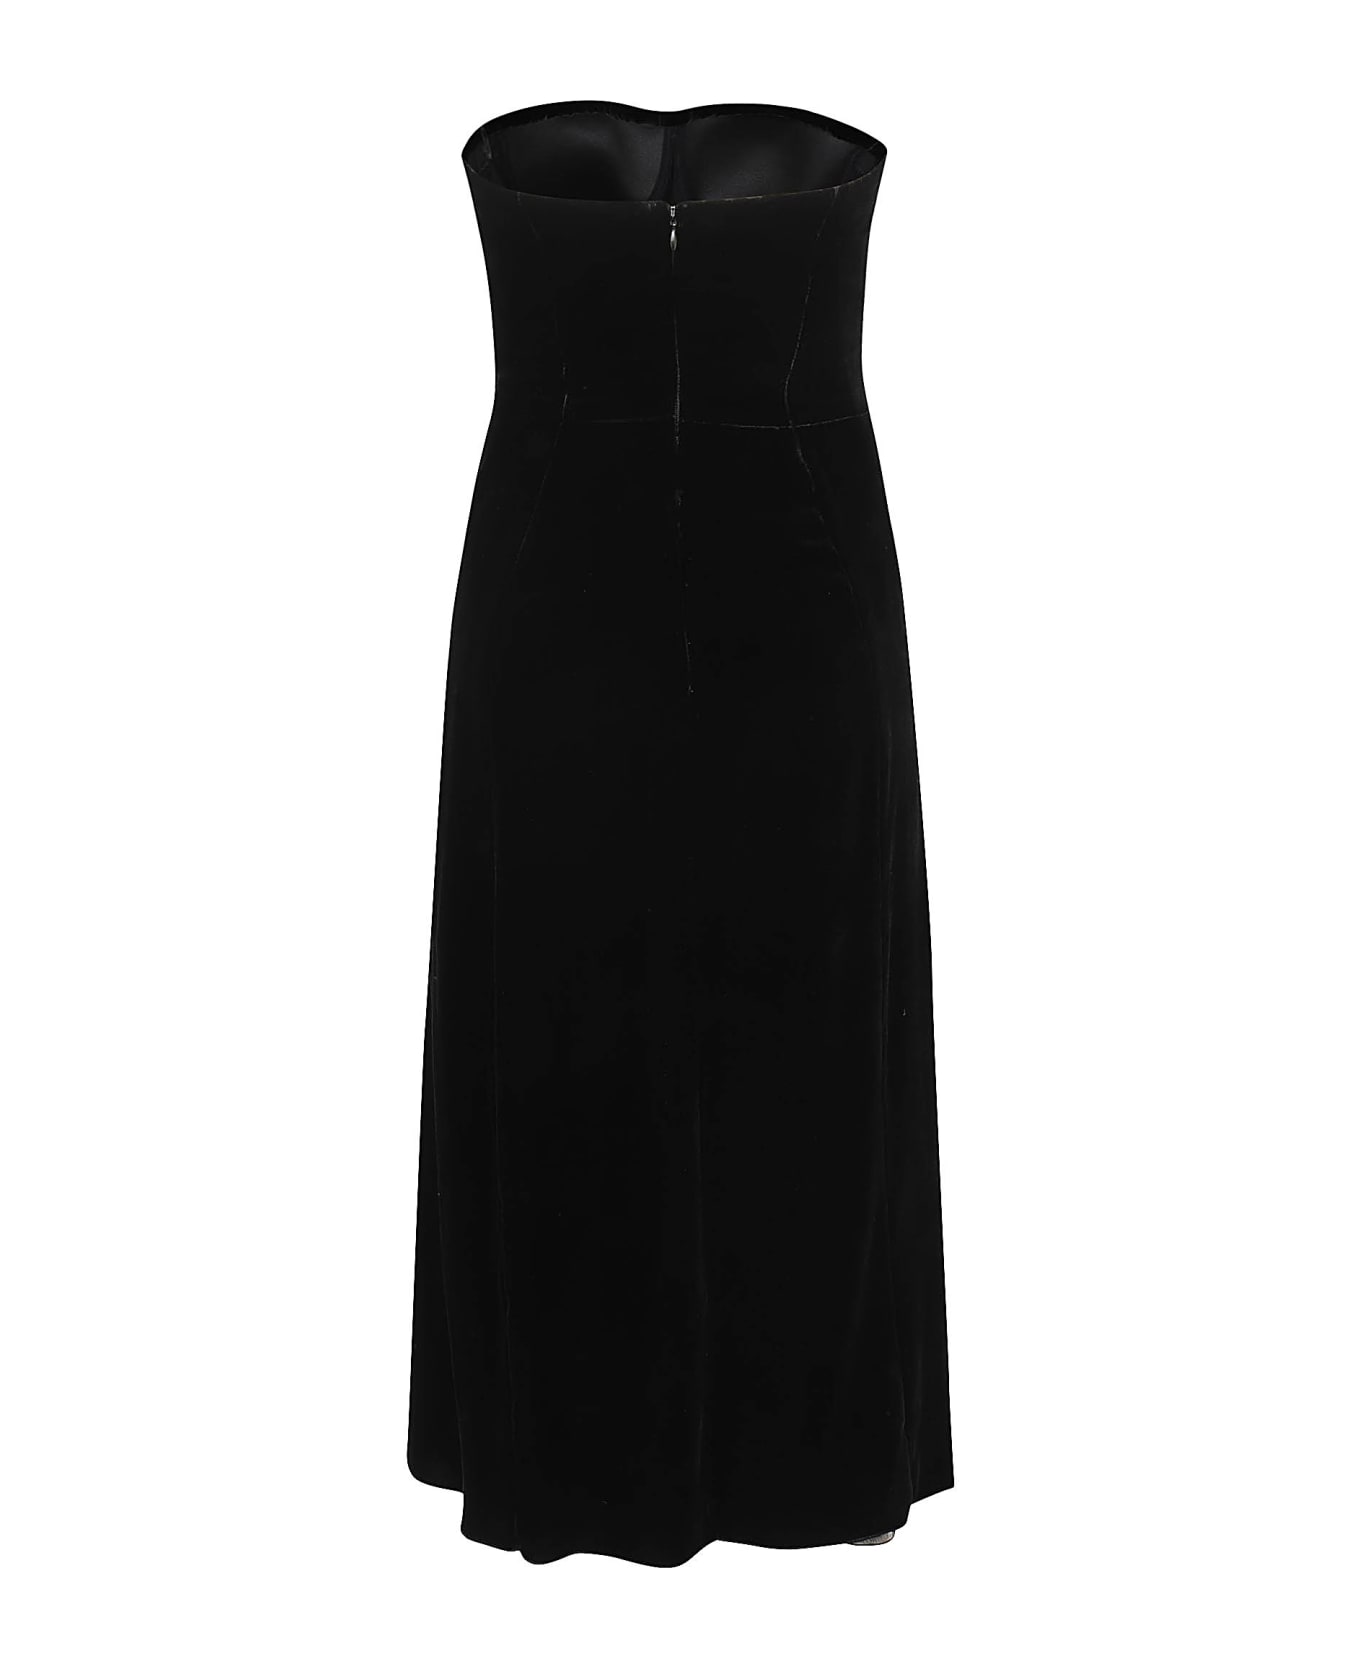 Ermanno Scervino Long Dress - Black